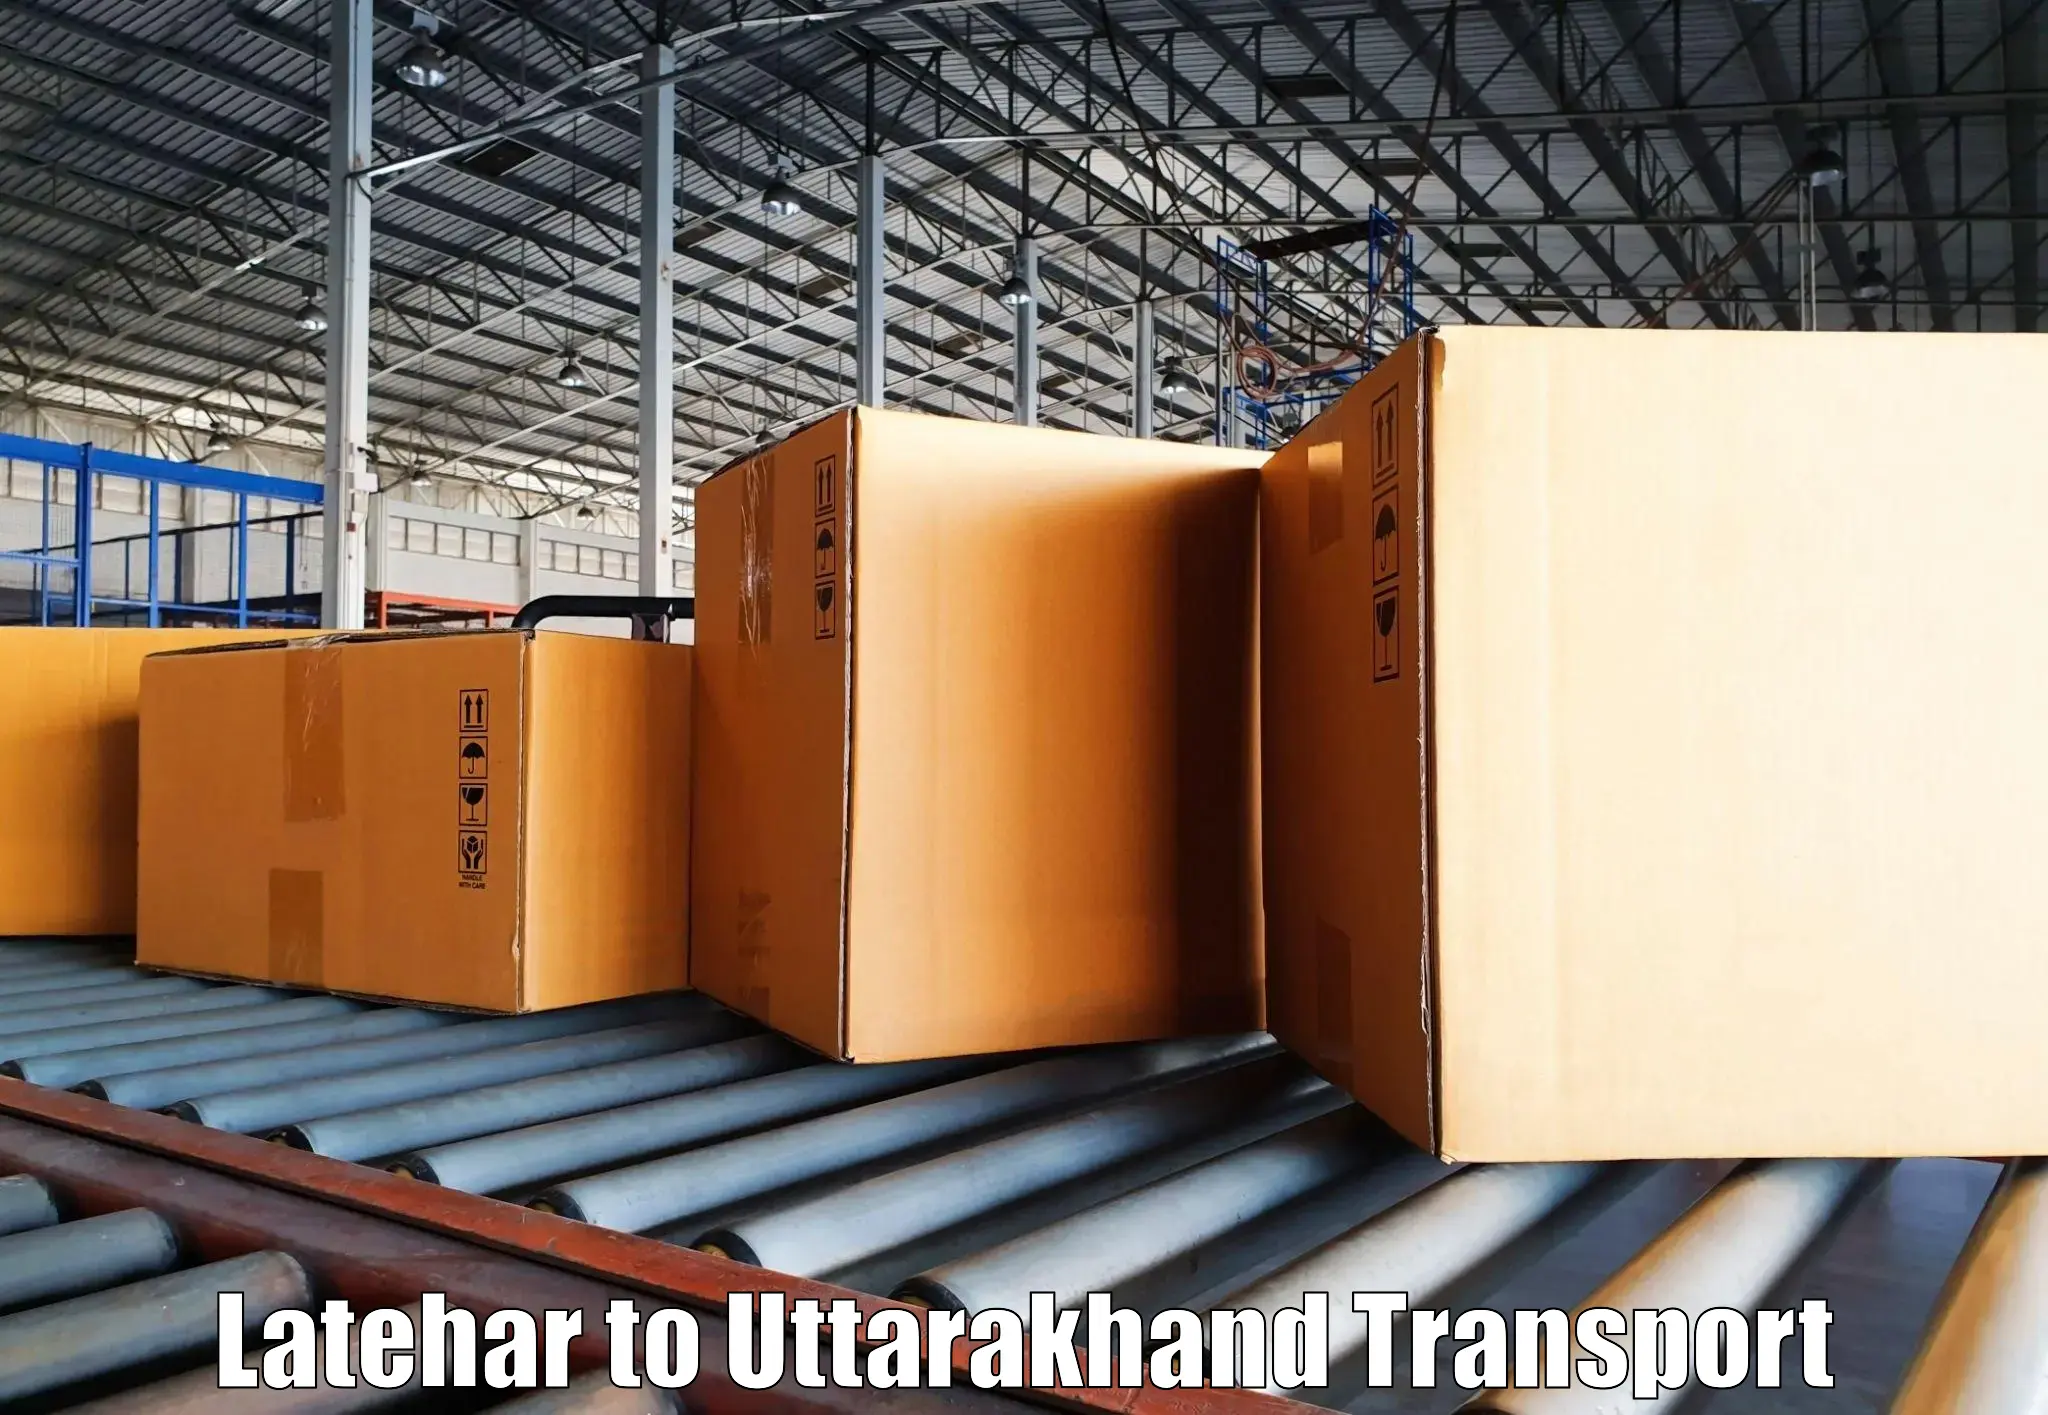 Commercial transport service Latehar to Uttarakhand